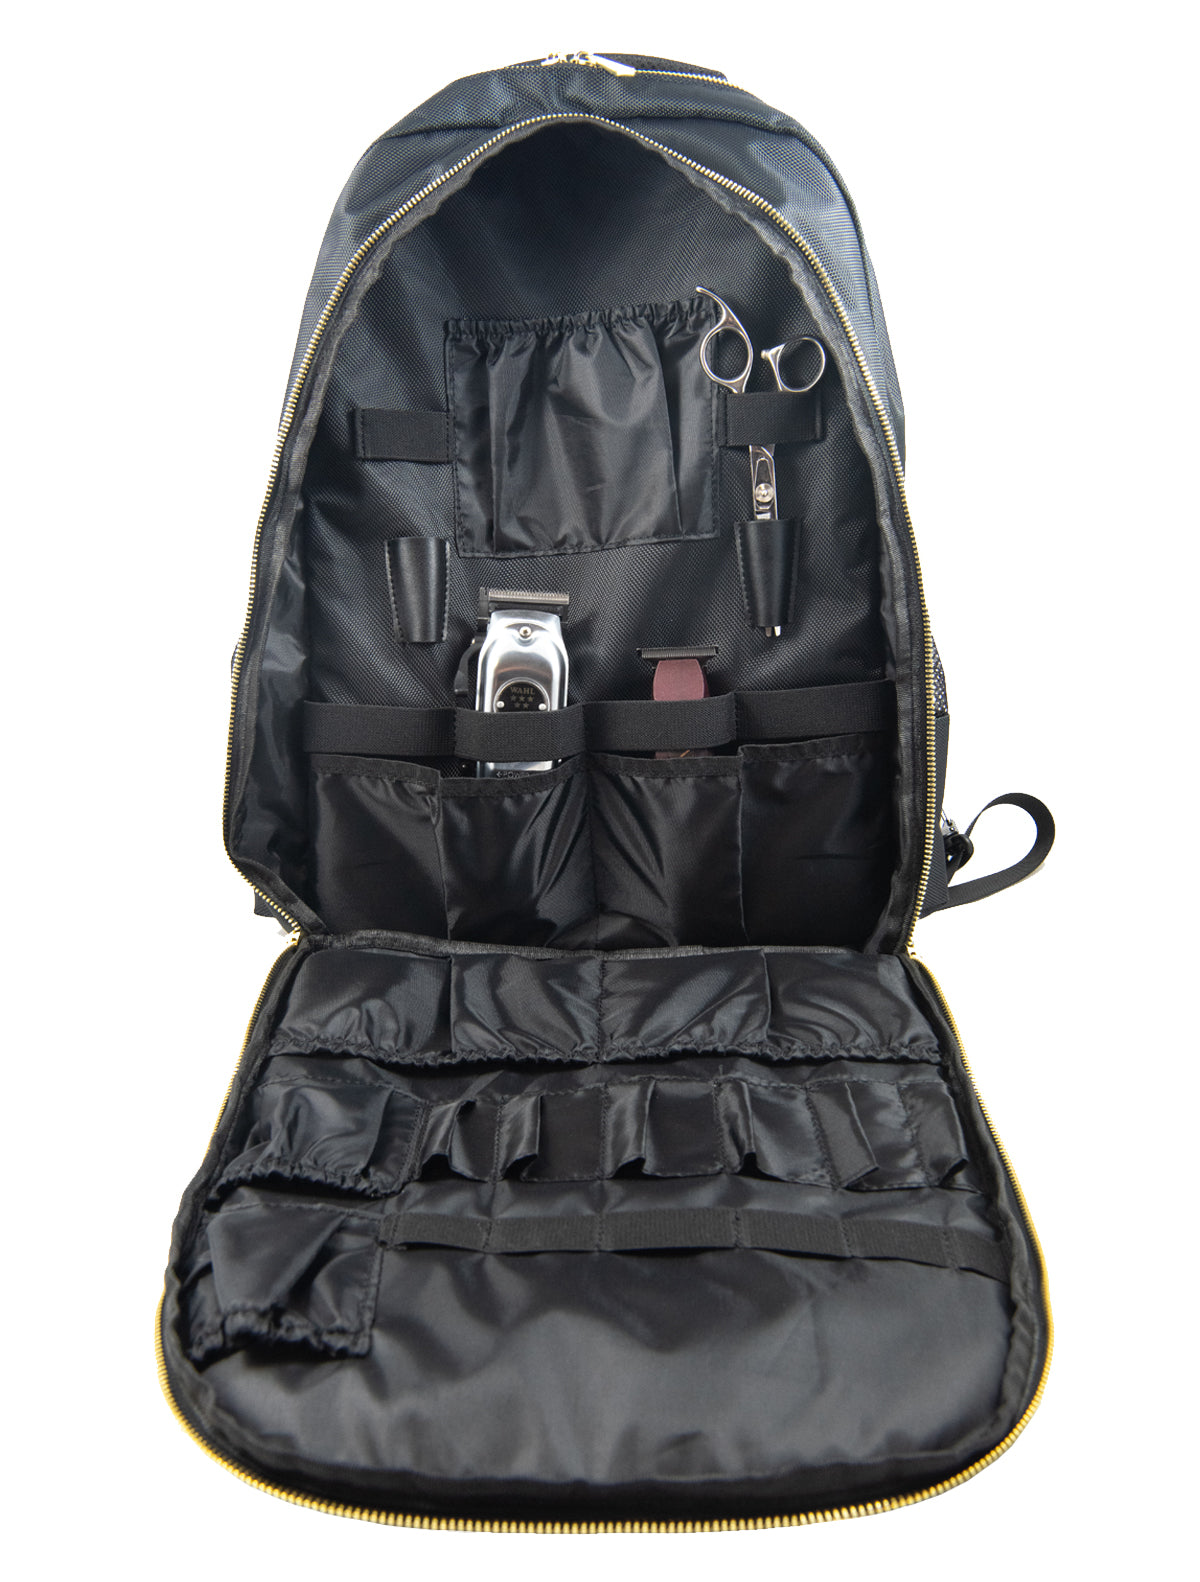 Cordless Senior Clipper + Detailer Trimmer + Backpack COMBO